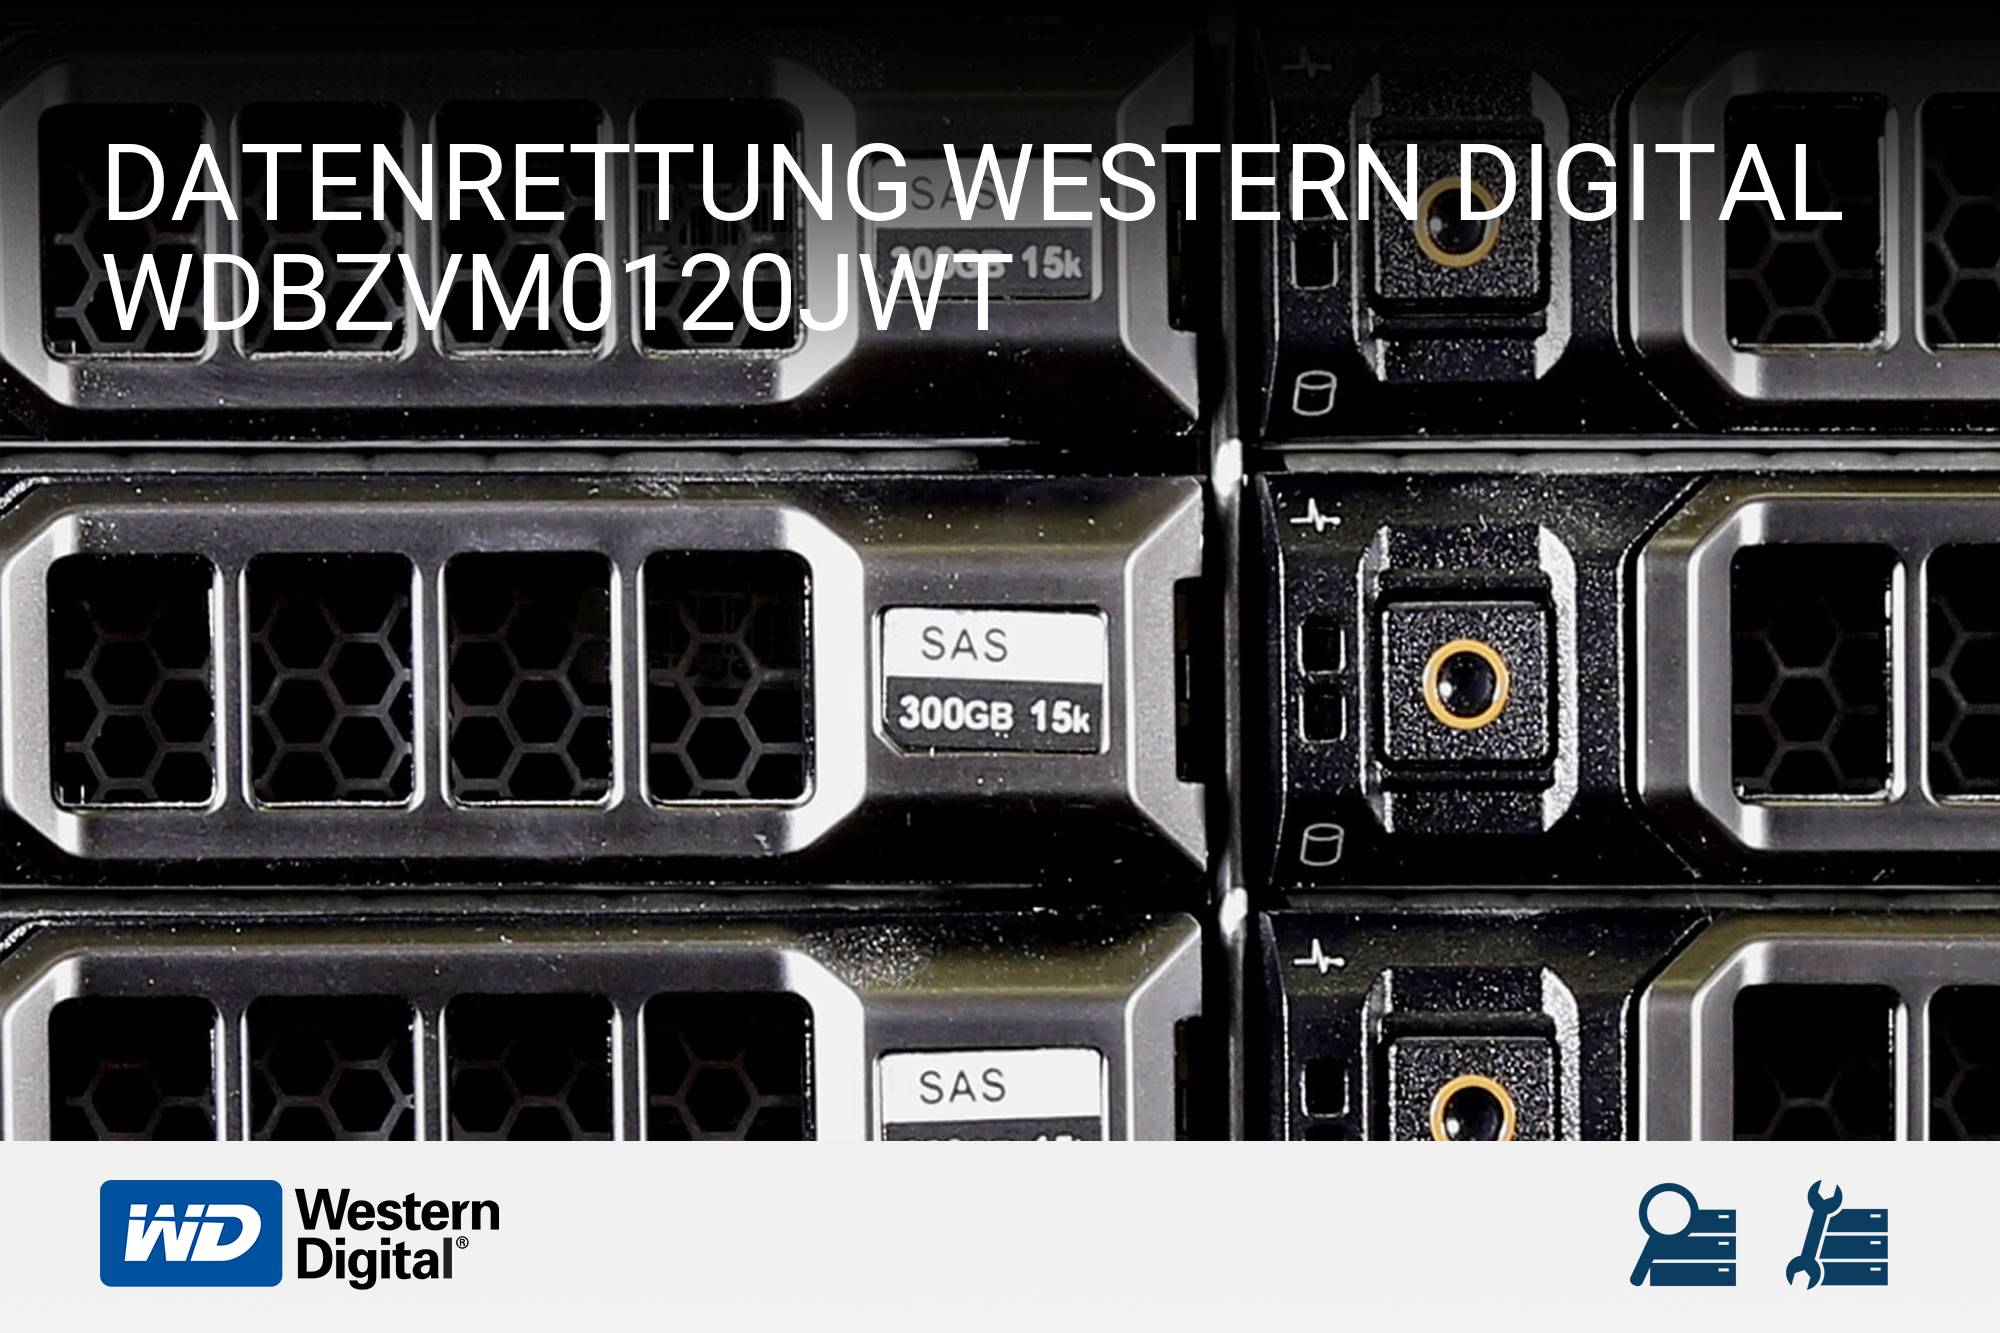 Western Digital WDBZVM0120JWT